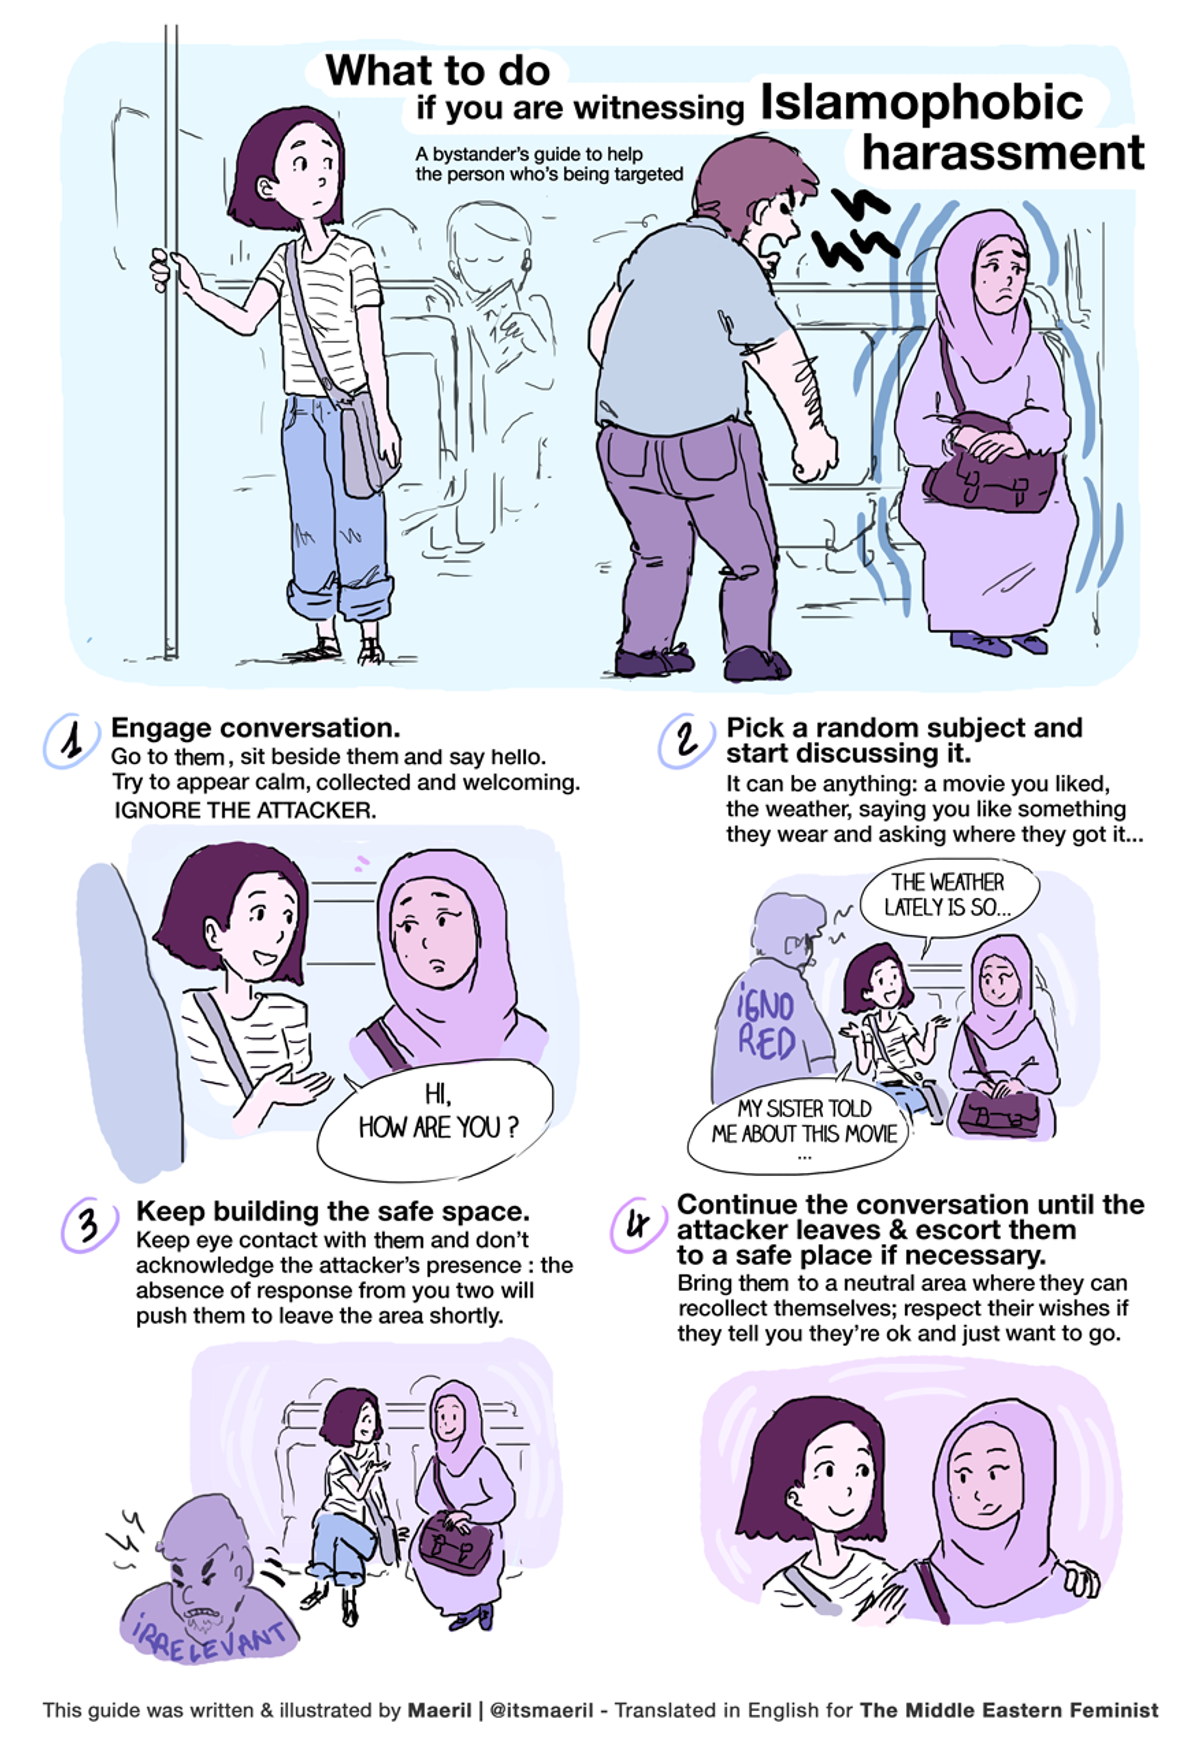 How to React to Islamophobic Behavior